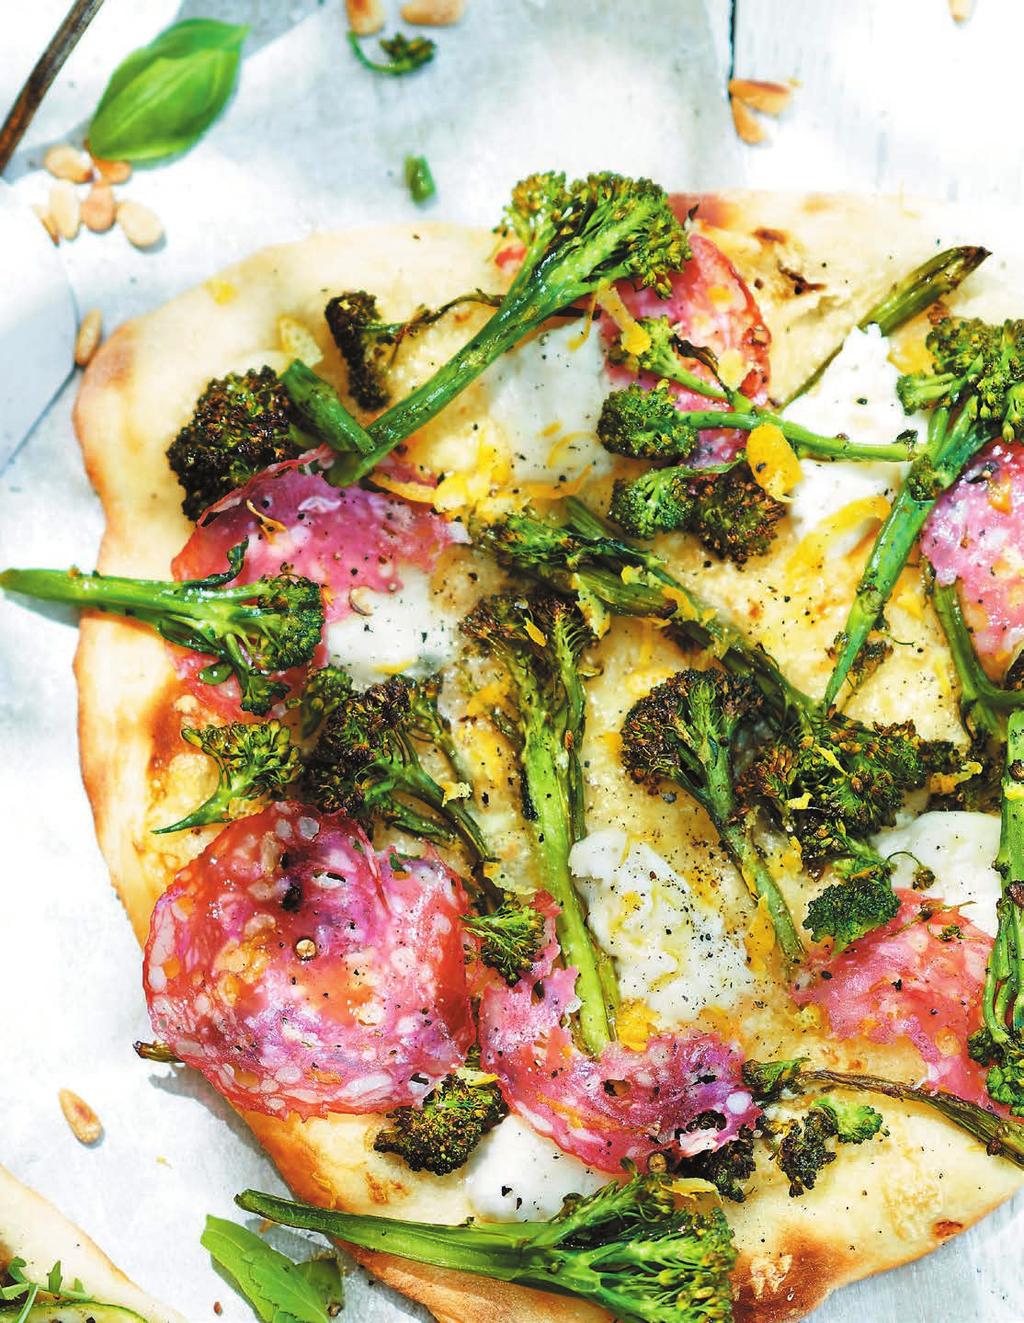 RECEPT 4 40 MIN 661 kcal/port. Energi från: Fett 45g Kolhydrater 37g Protein 26g Pizza bianco med mozzarella, broccoli och salami Salami är en klassiker på pizza, med broccoli blir det helt suveränt.